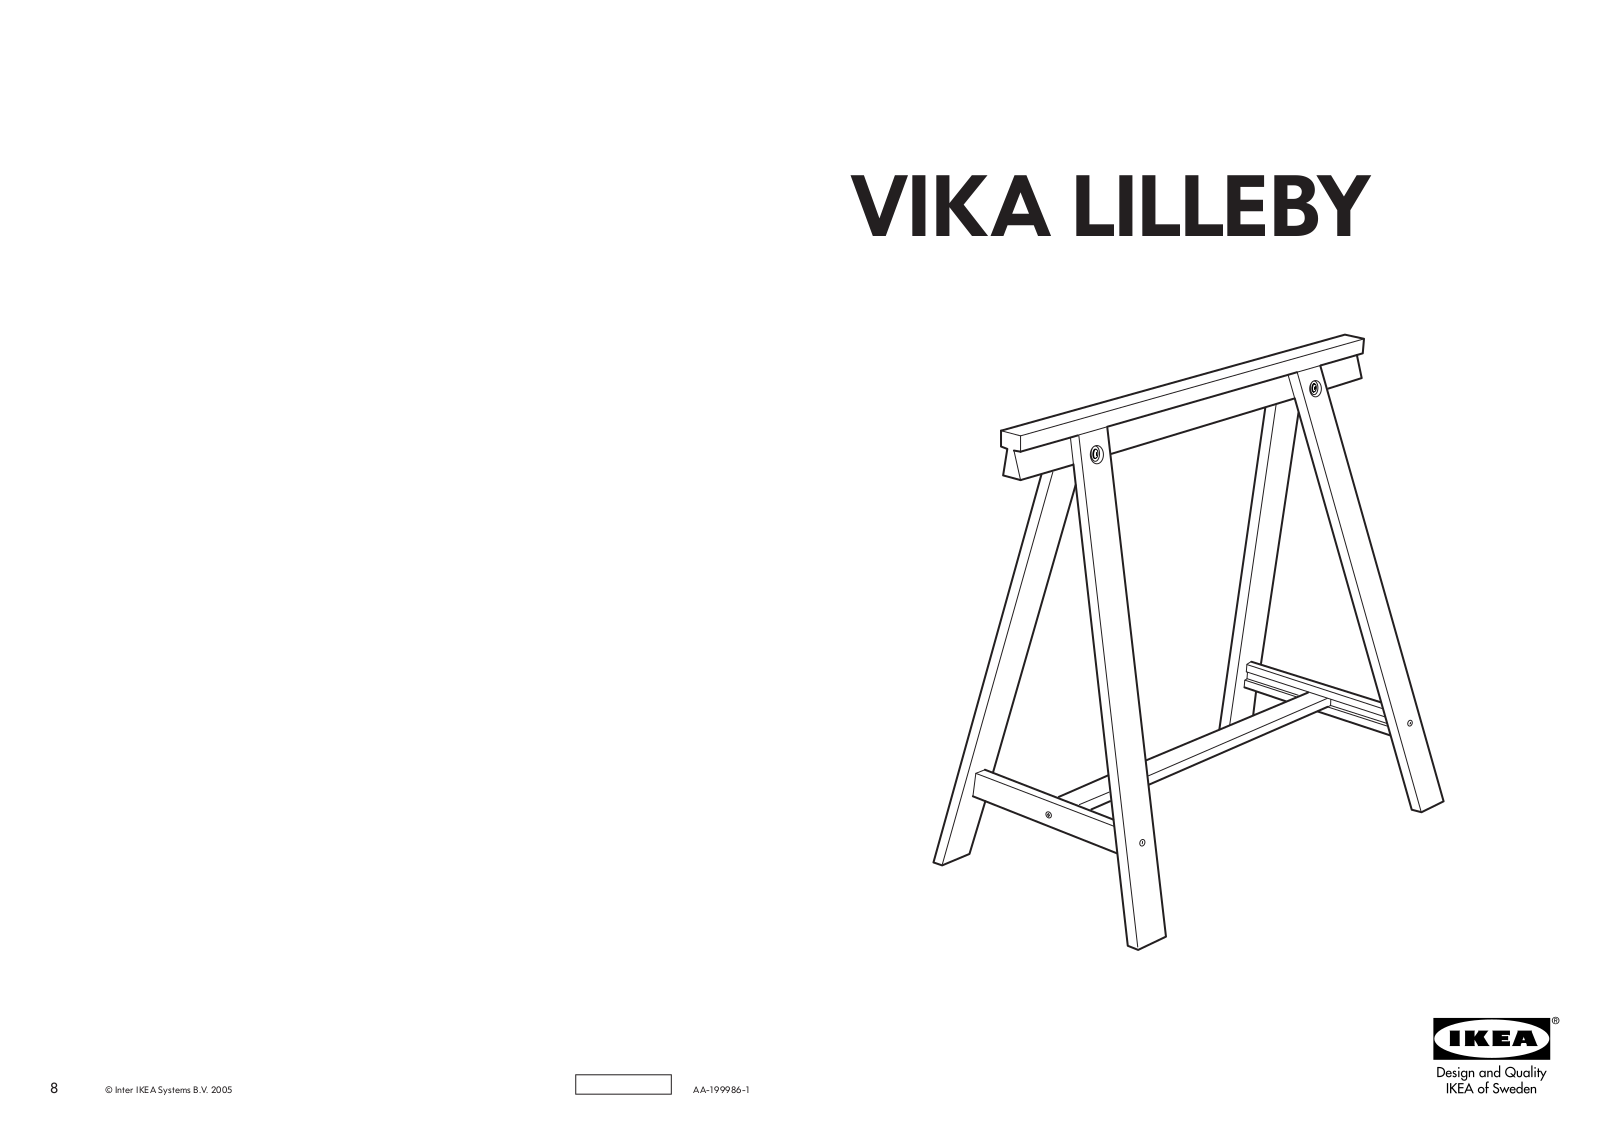 IKEA VIKA LILLEBY TRESTLE 28X28 Assembly Instruction